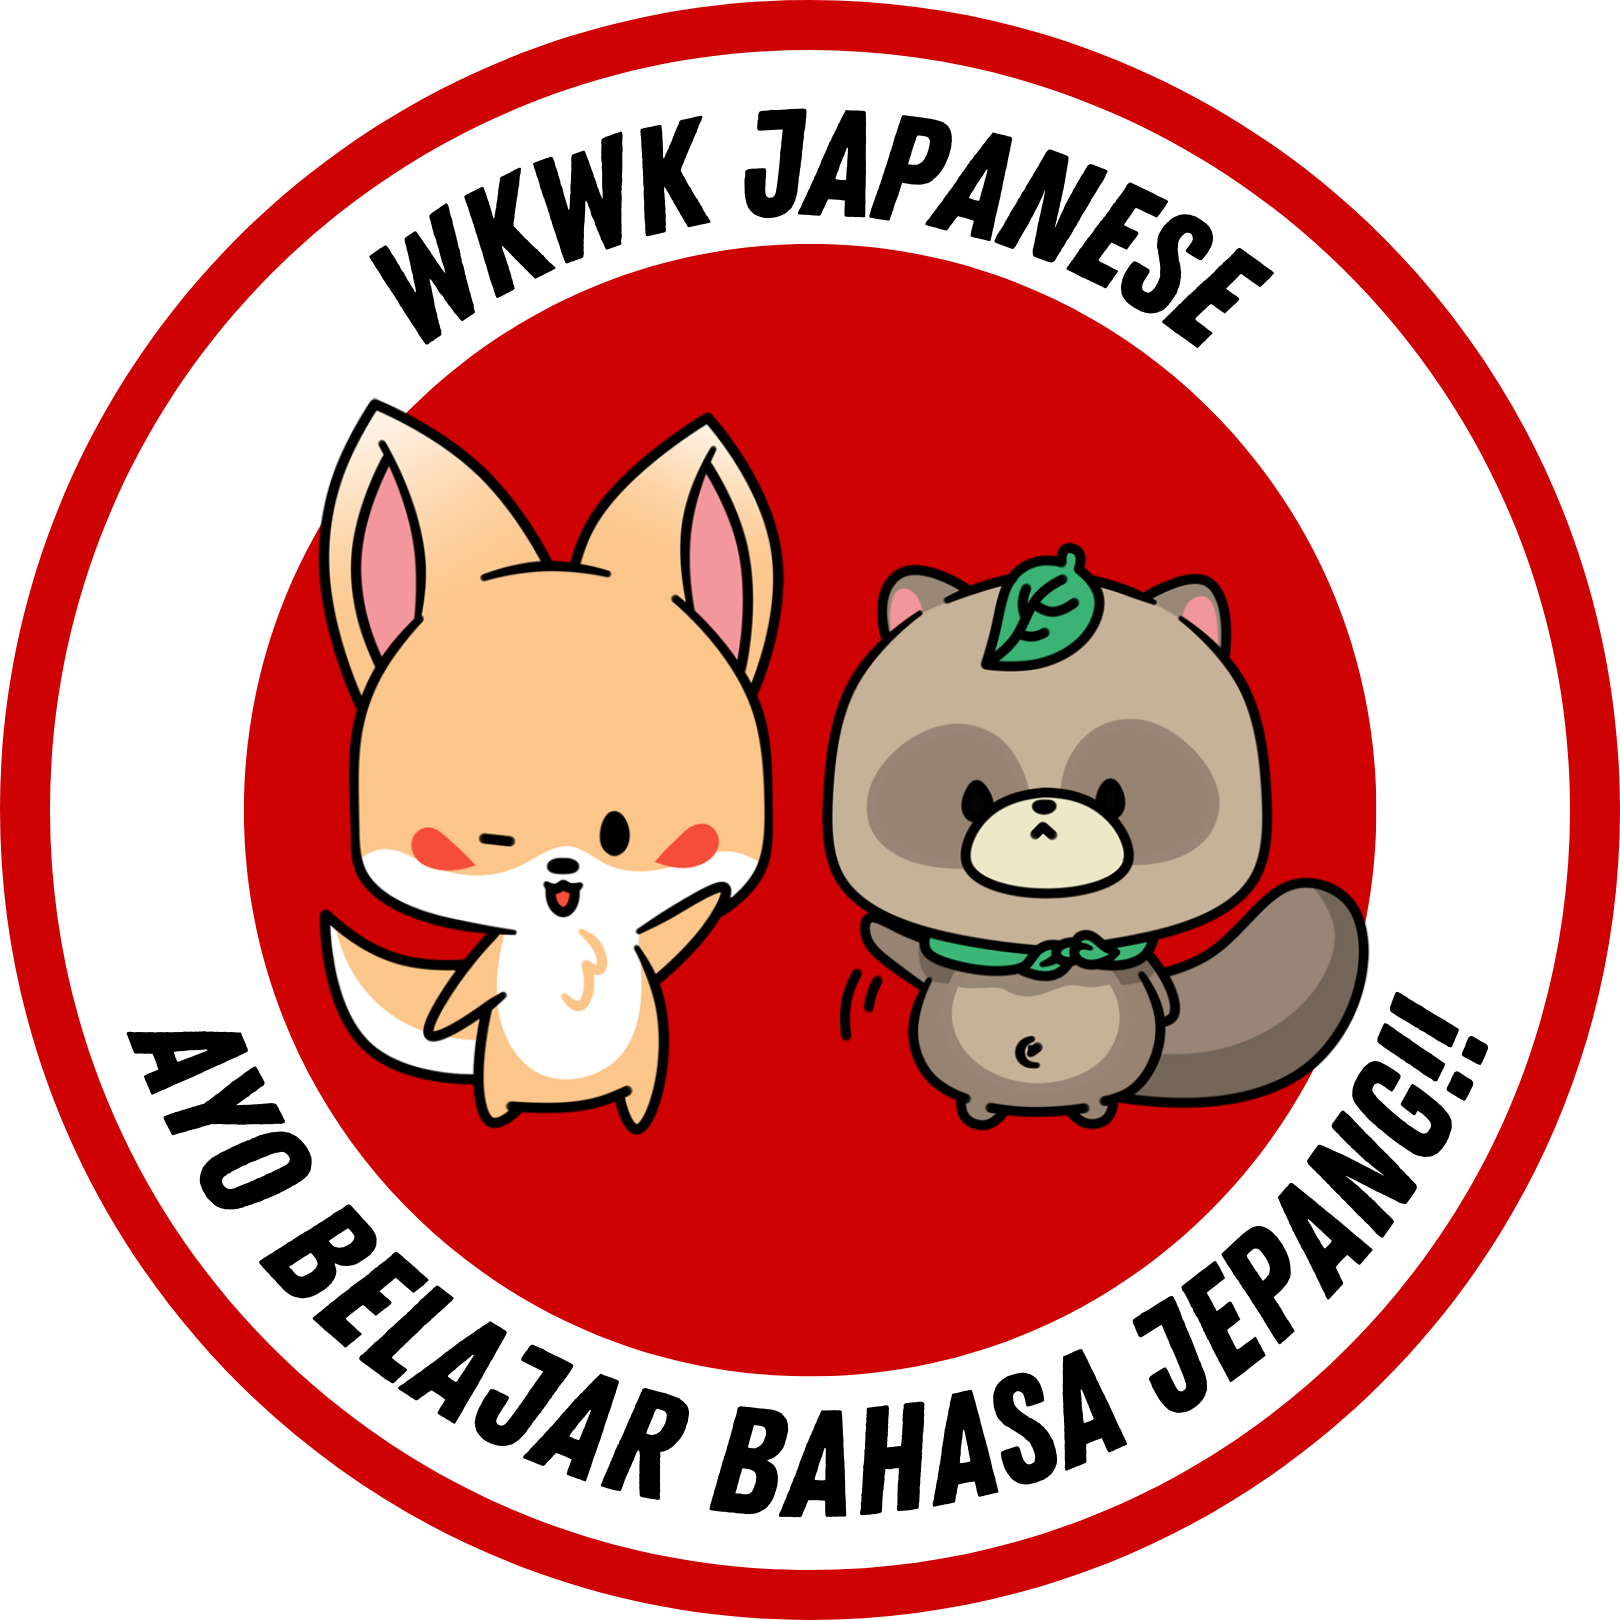 wkwk-japanese-logo